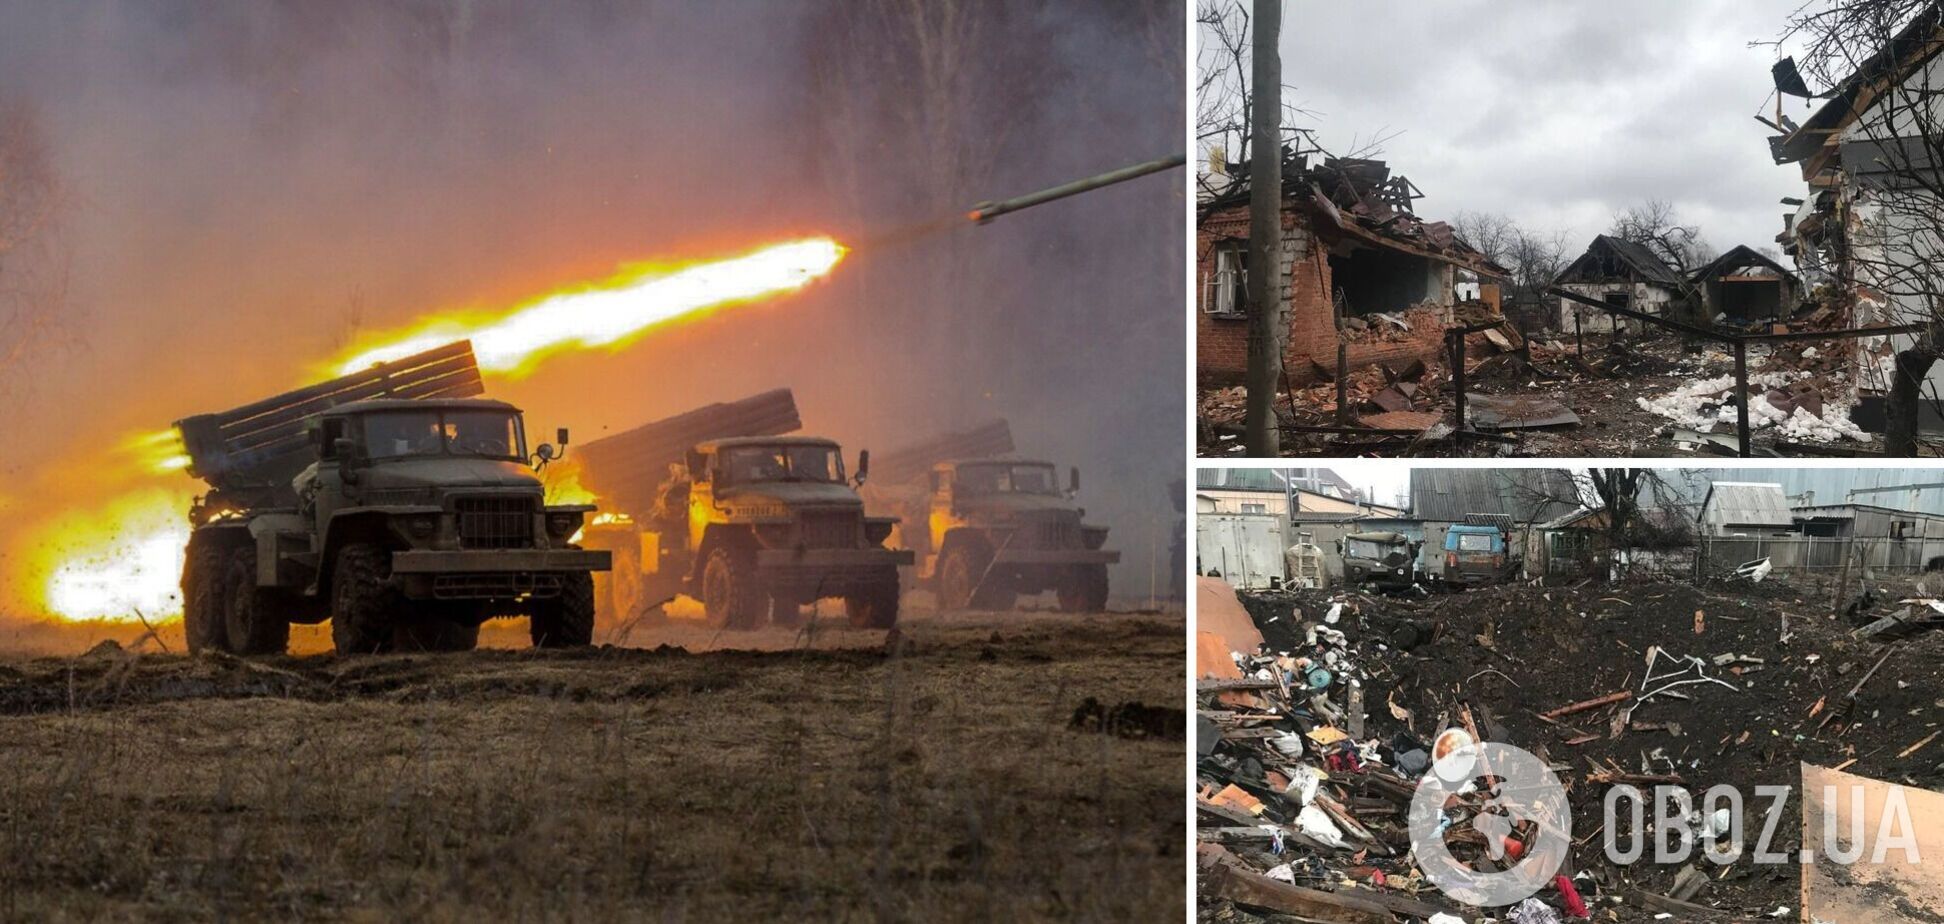 'Сровнять с землей': в сеть попал разговор оккупантов об обстреле сел в Украине. Аудио